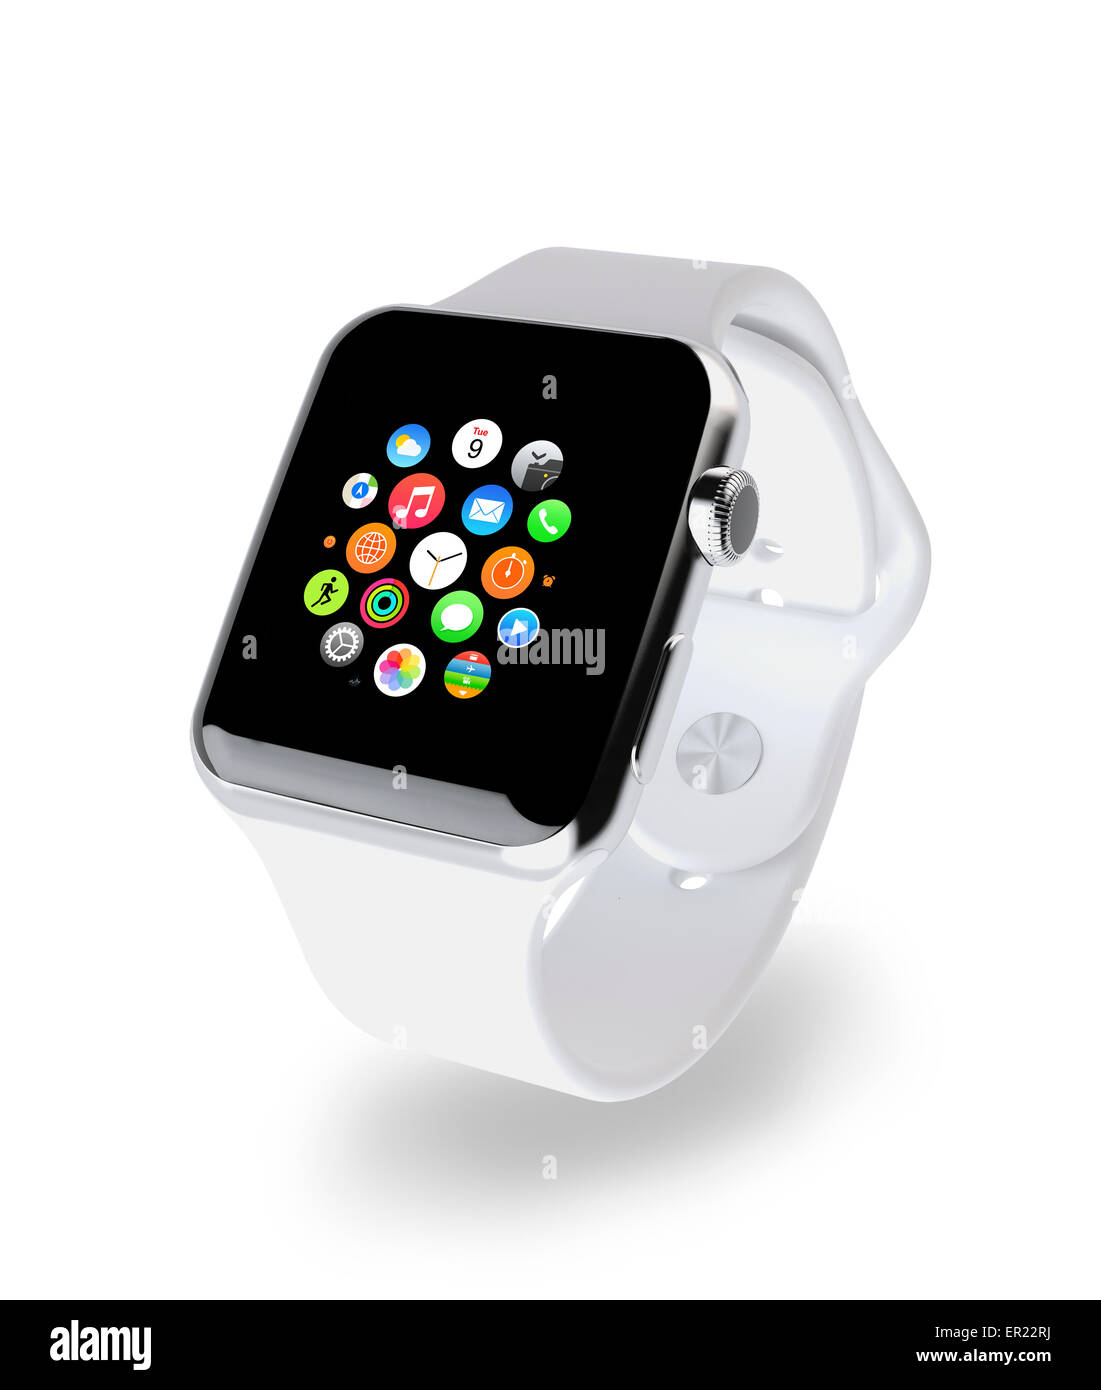 apple watch smartwatch iwatch Stock Photo - Alamy